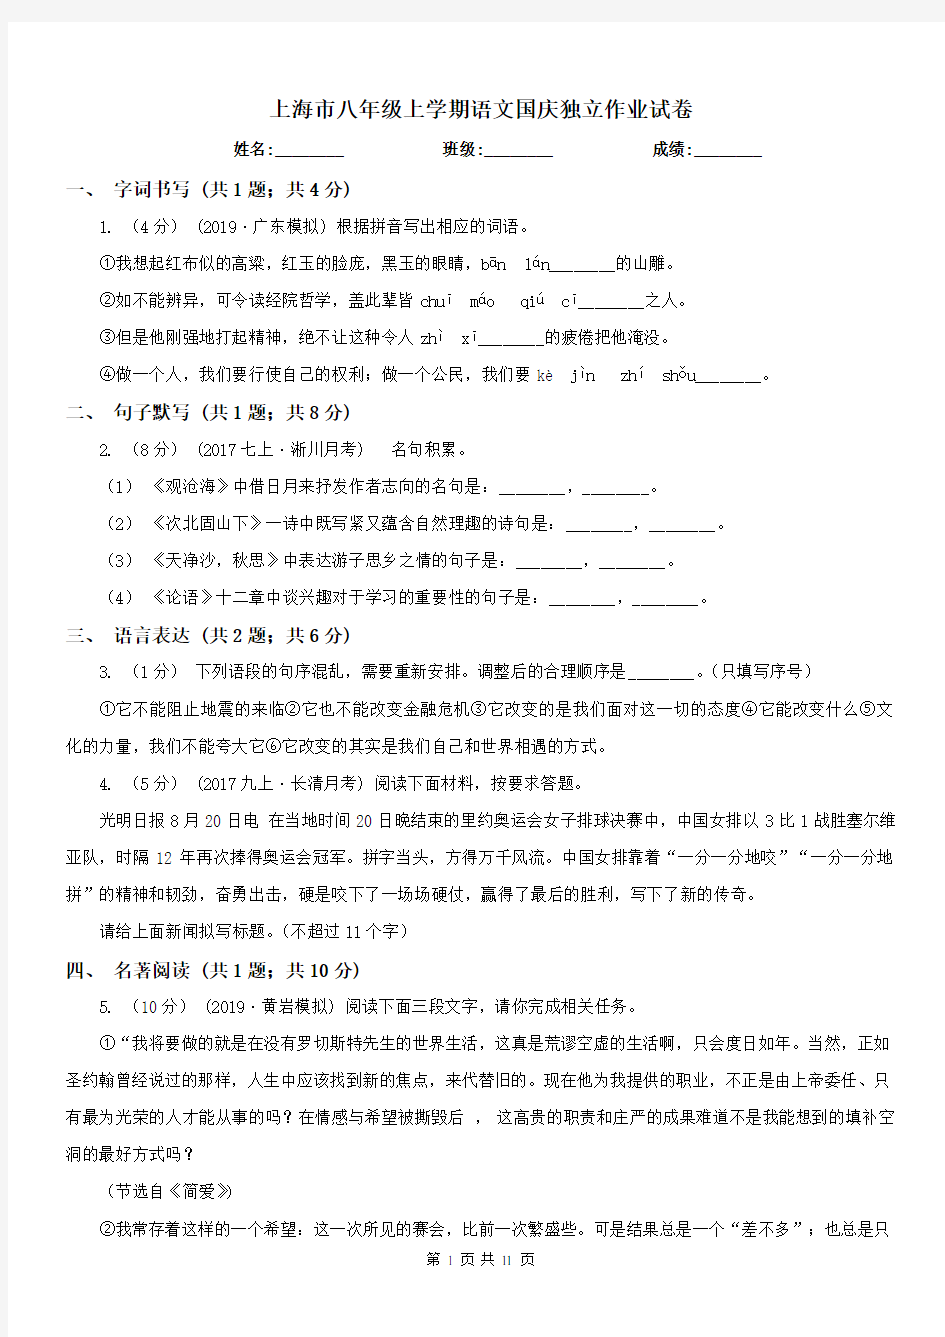 上海市八年级上学期语文国庆独立作业试卷